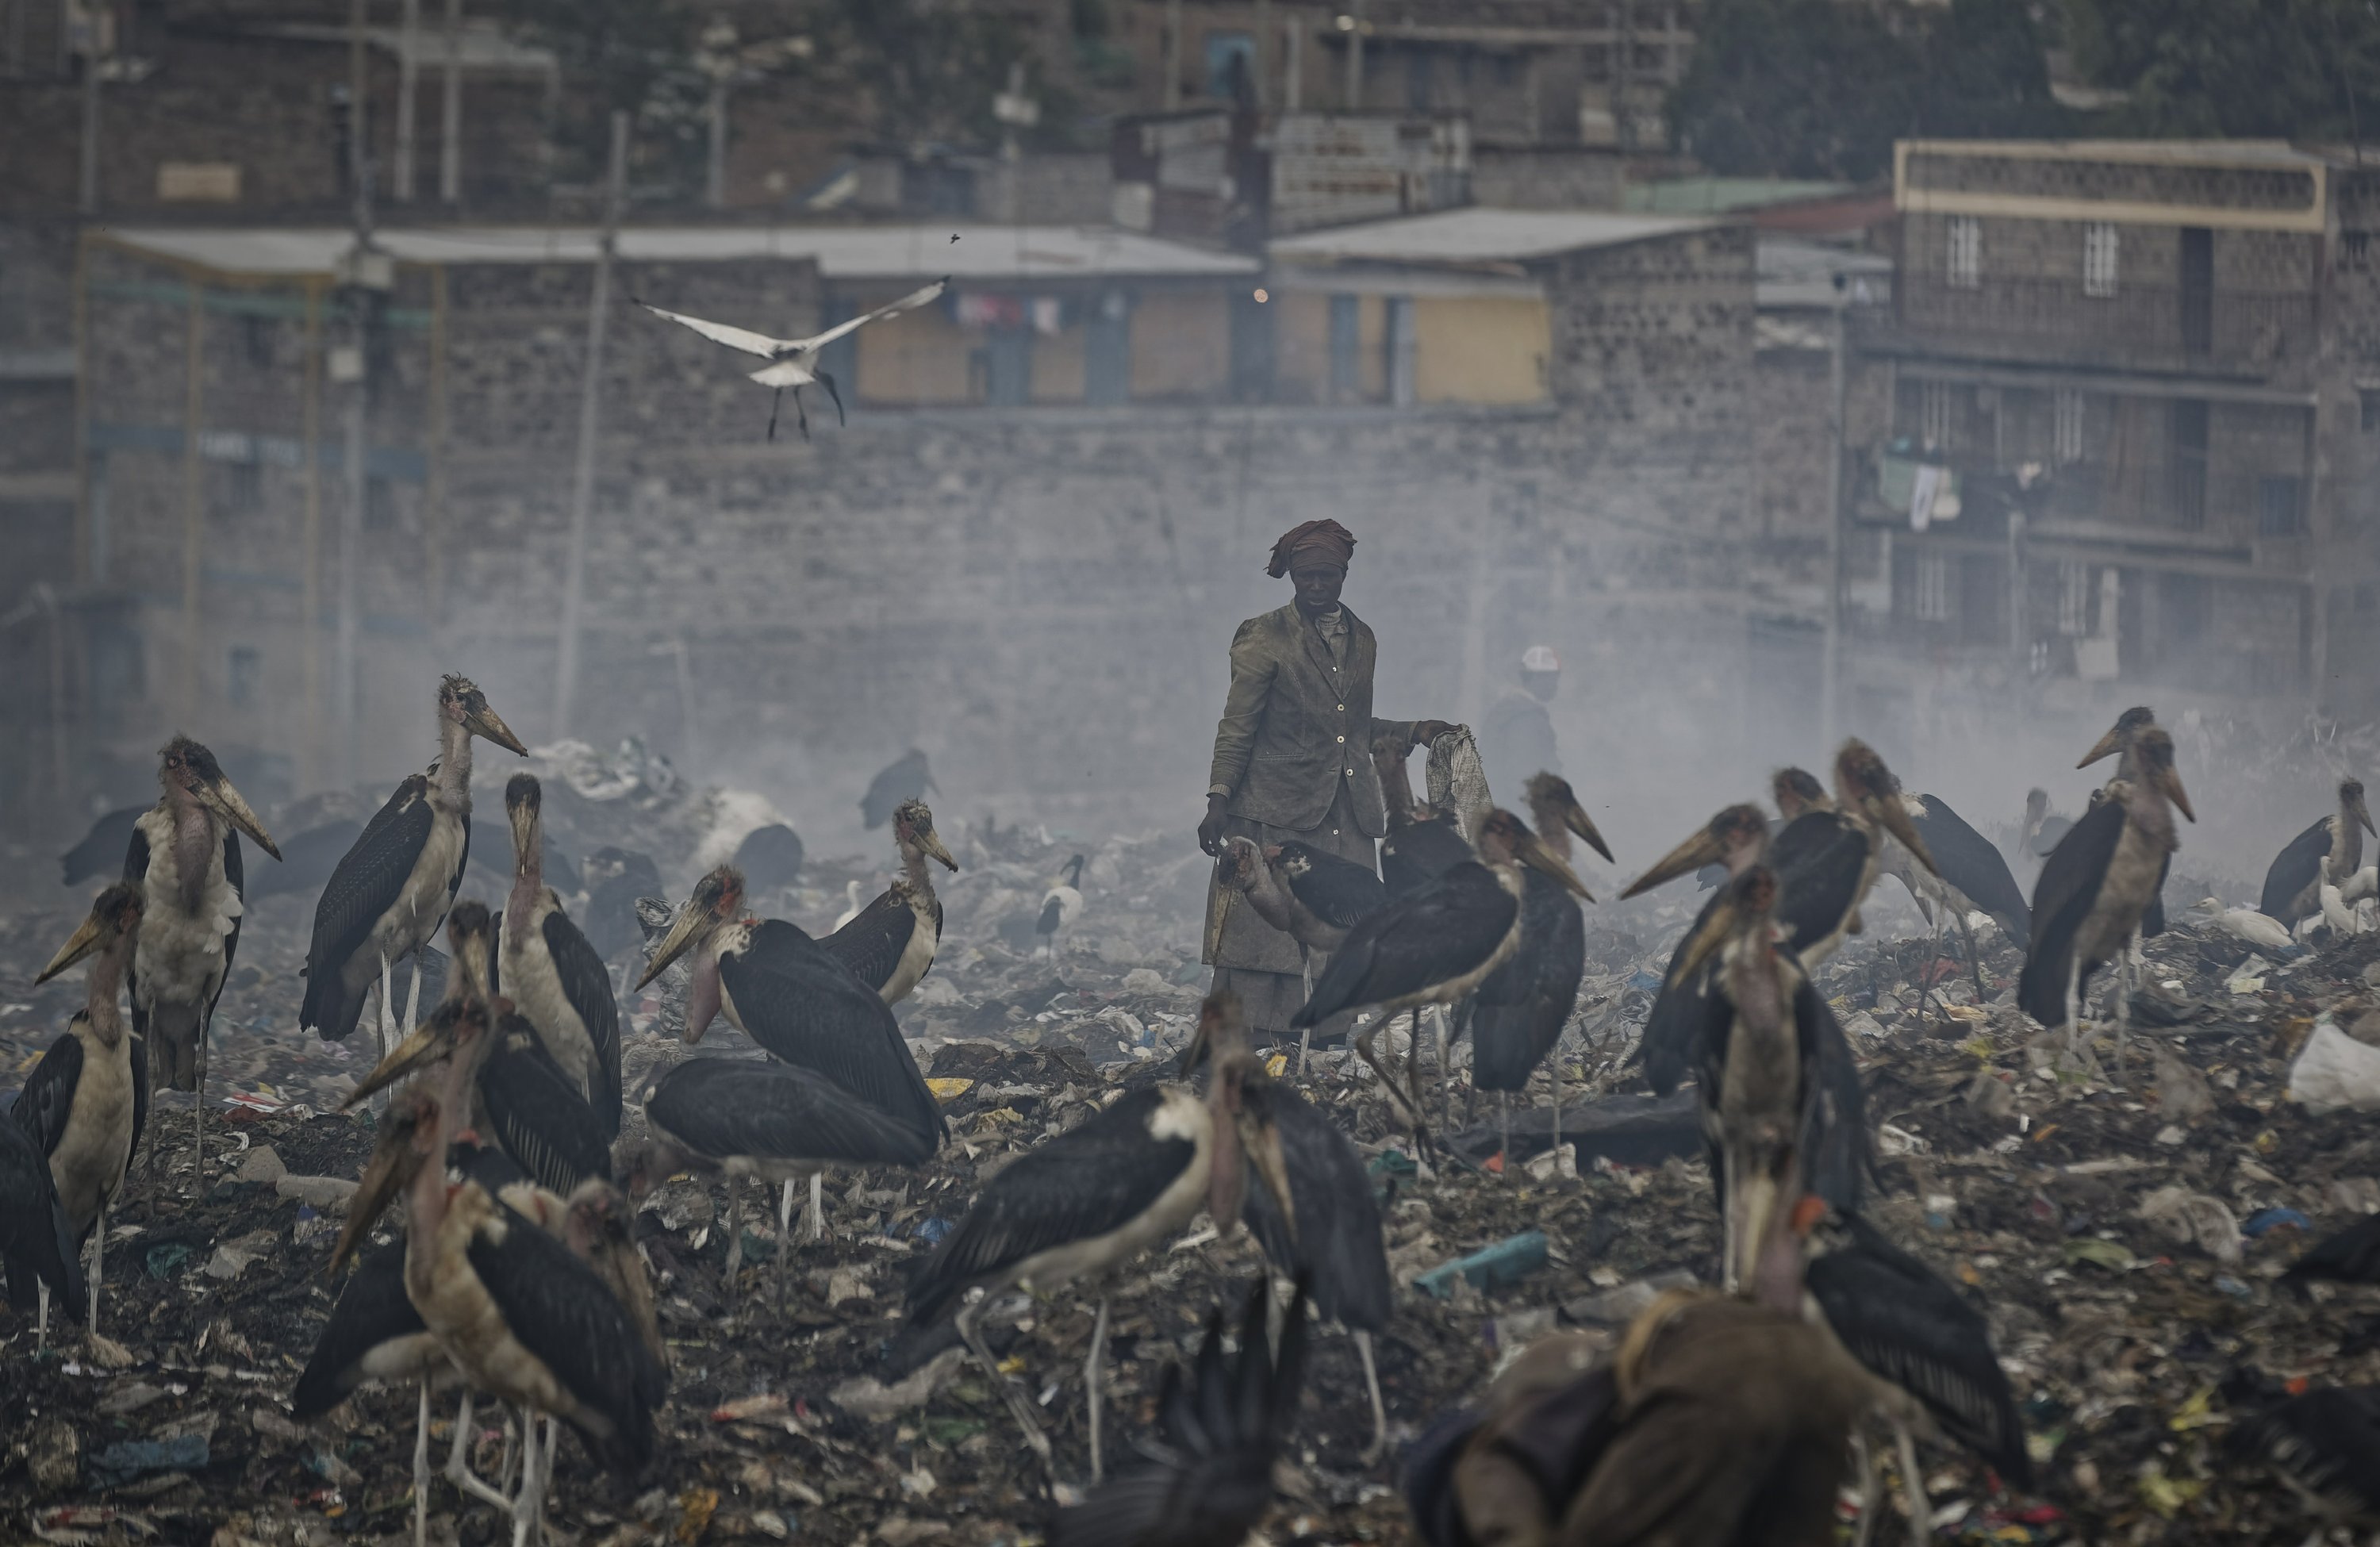 实拍在非洲垃圾填埋场拾荒的贫民 身处环境令人触目惊心